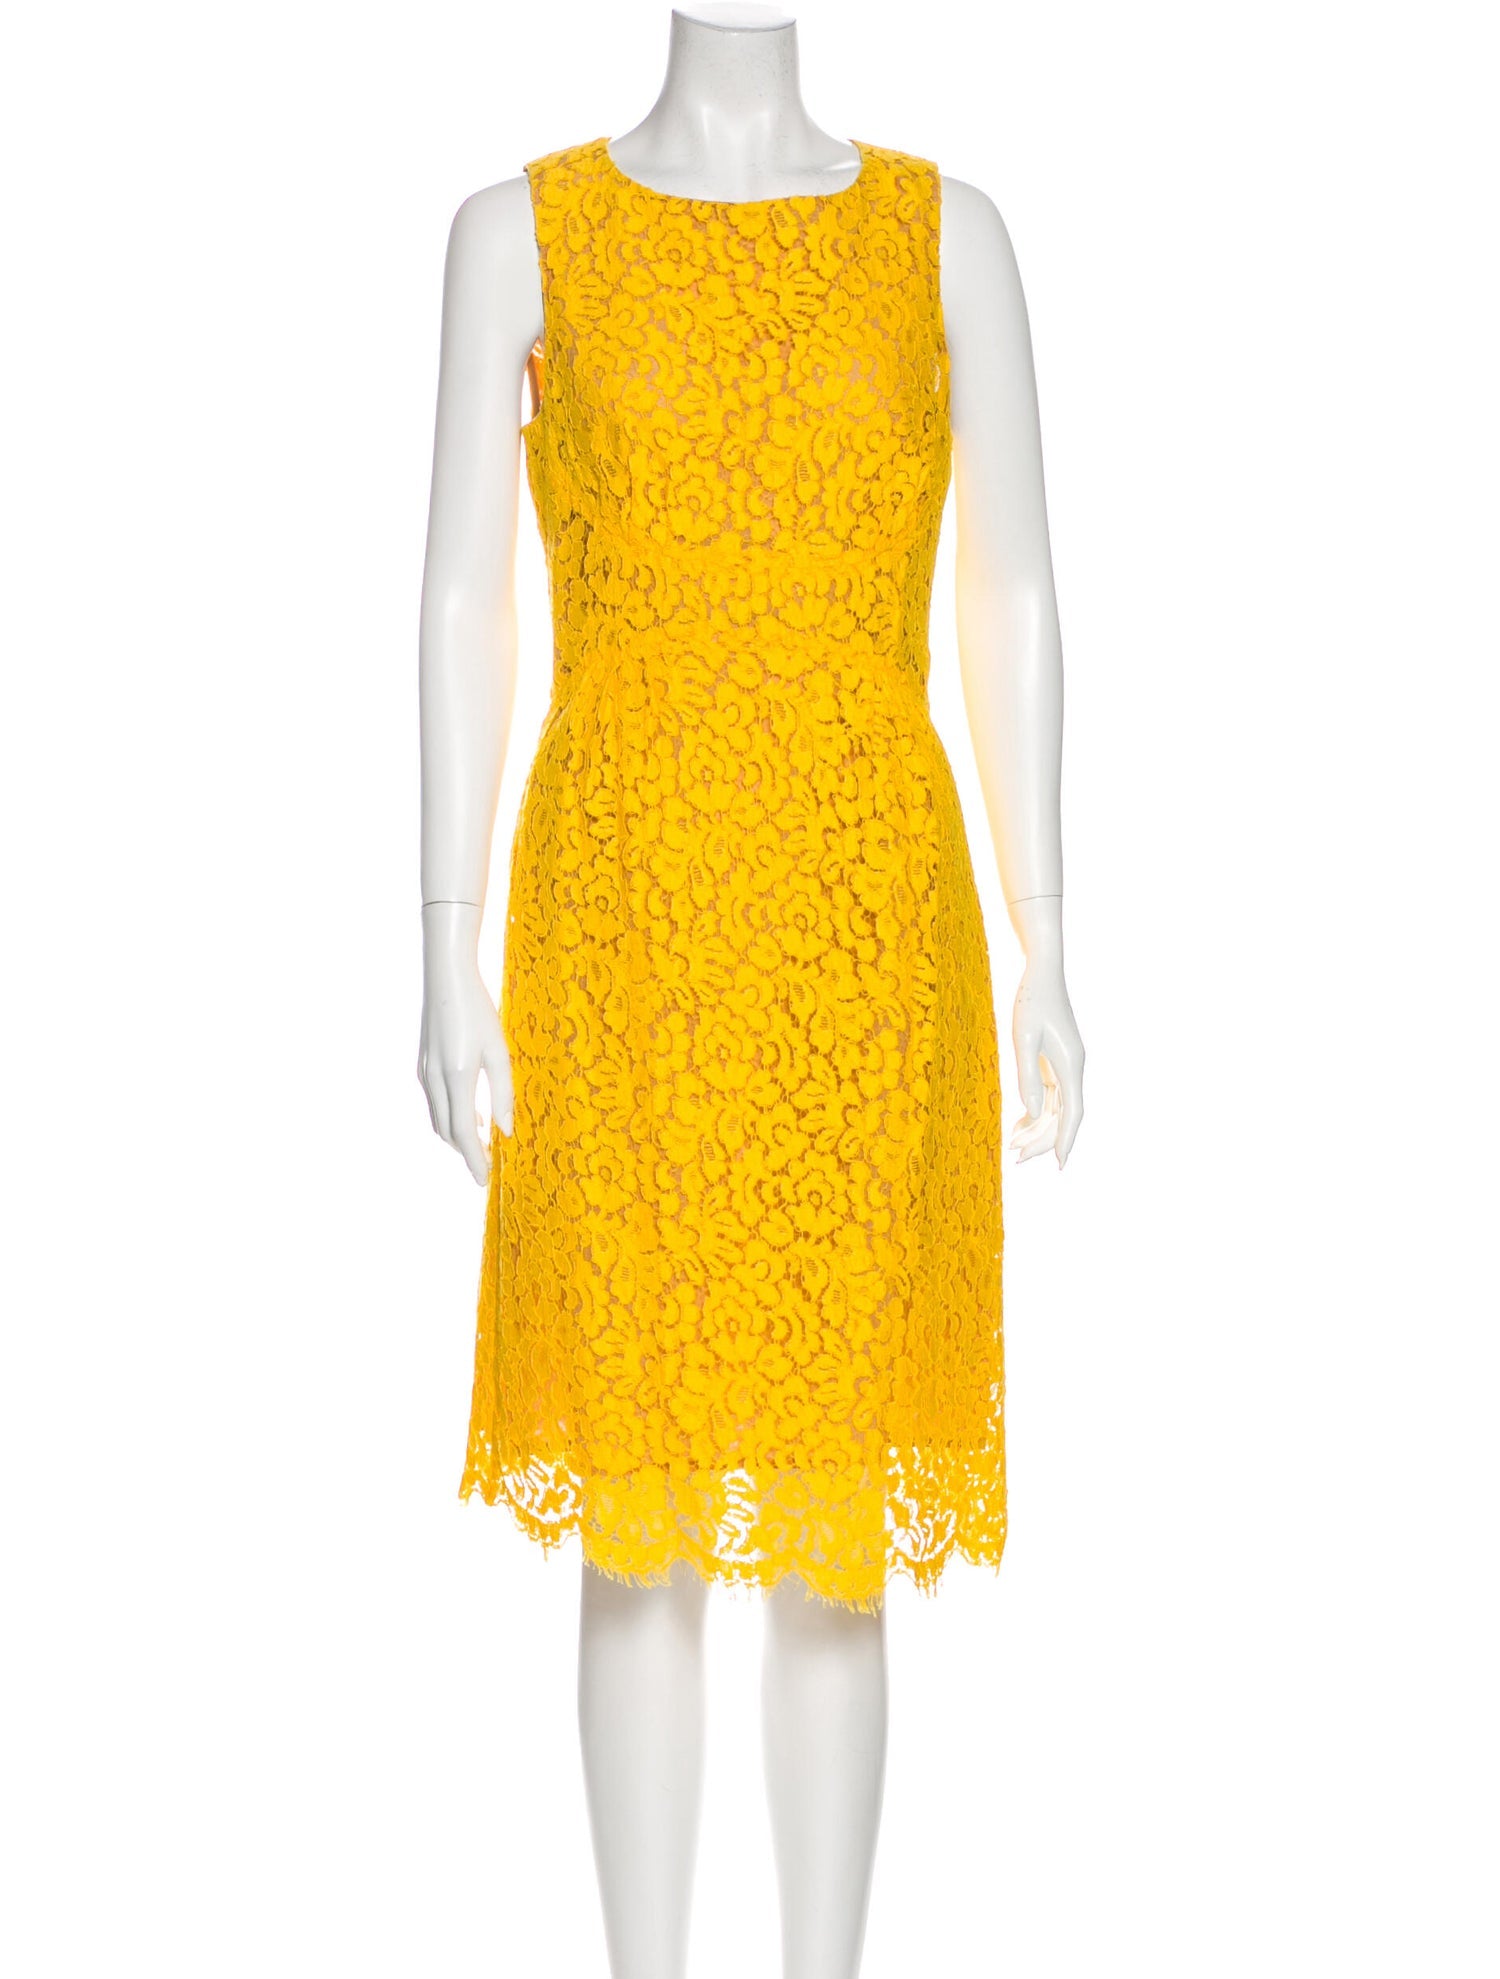 Michael Kors Yellow Lace Dress